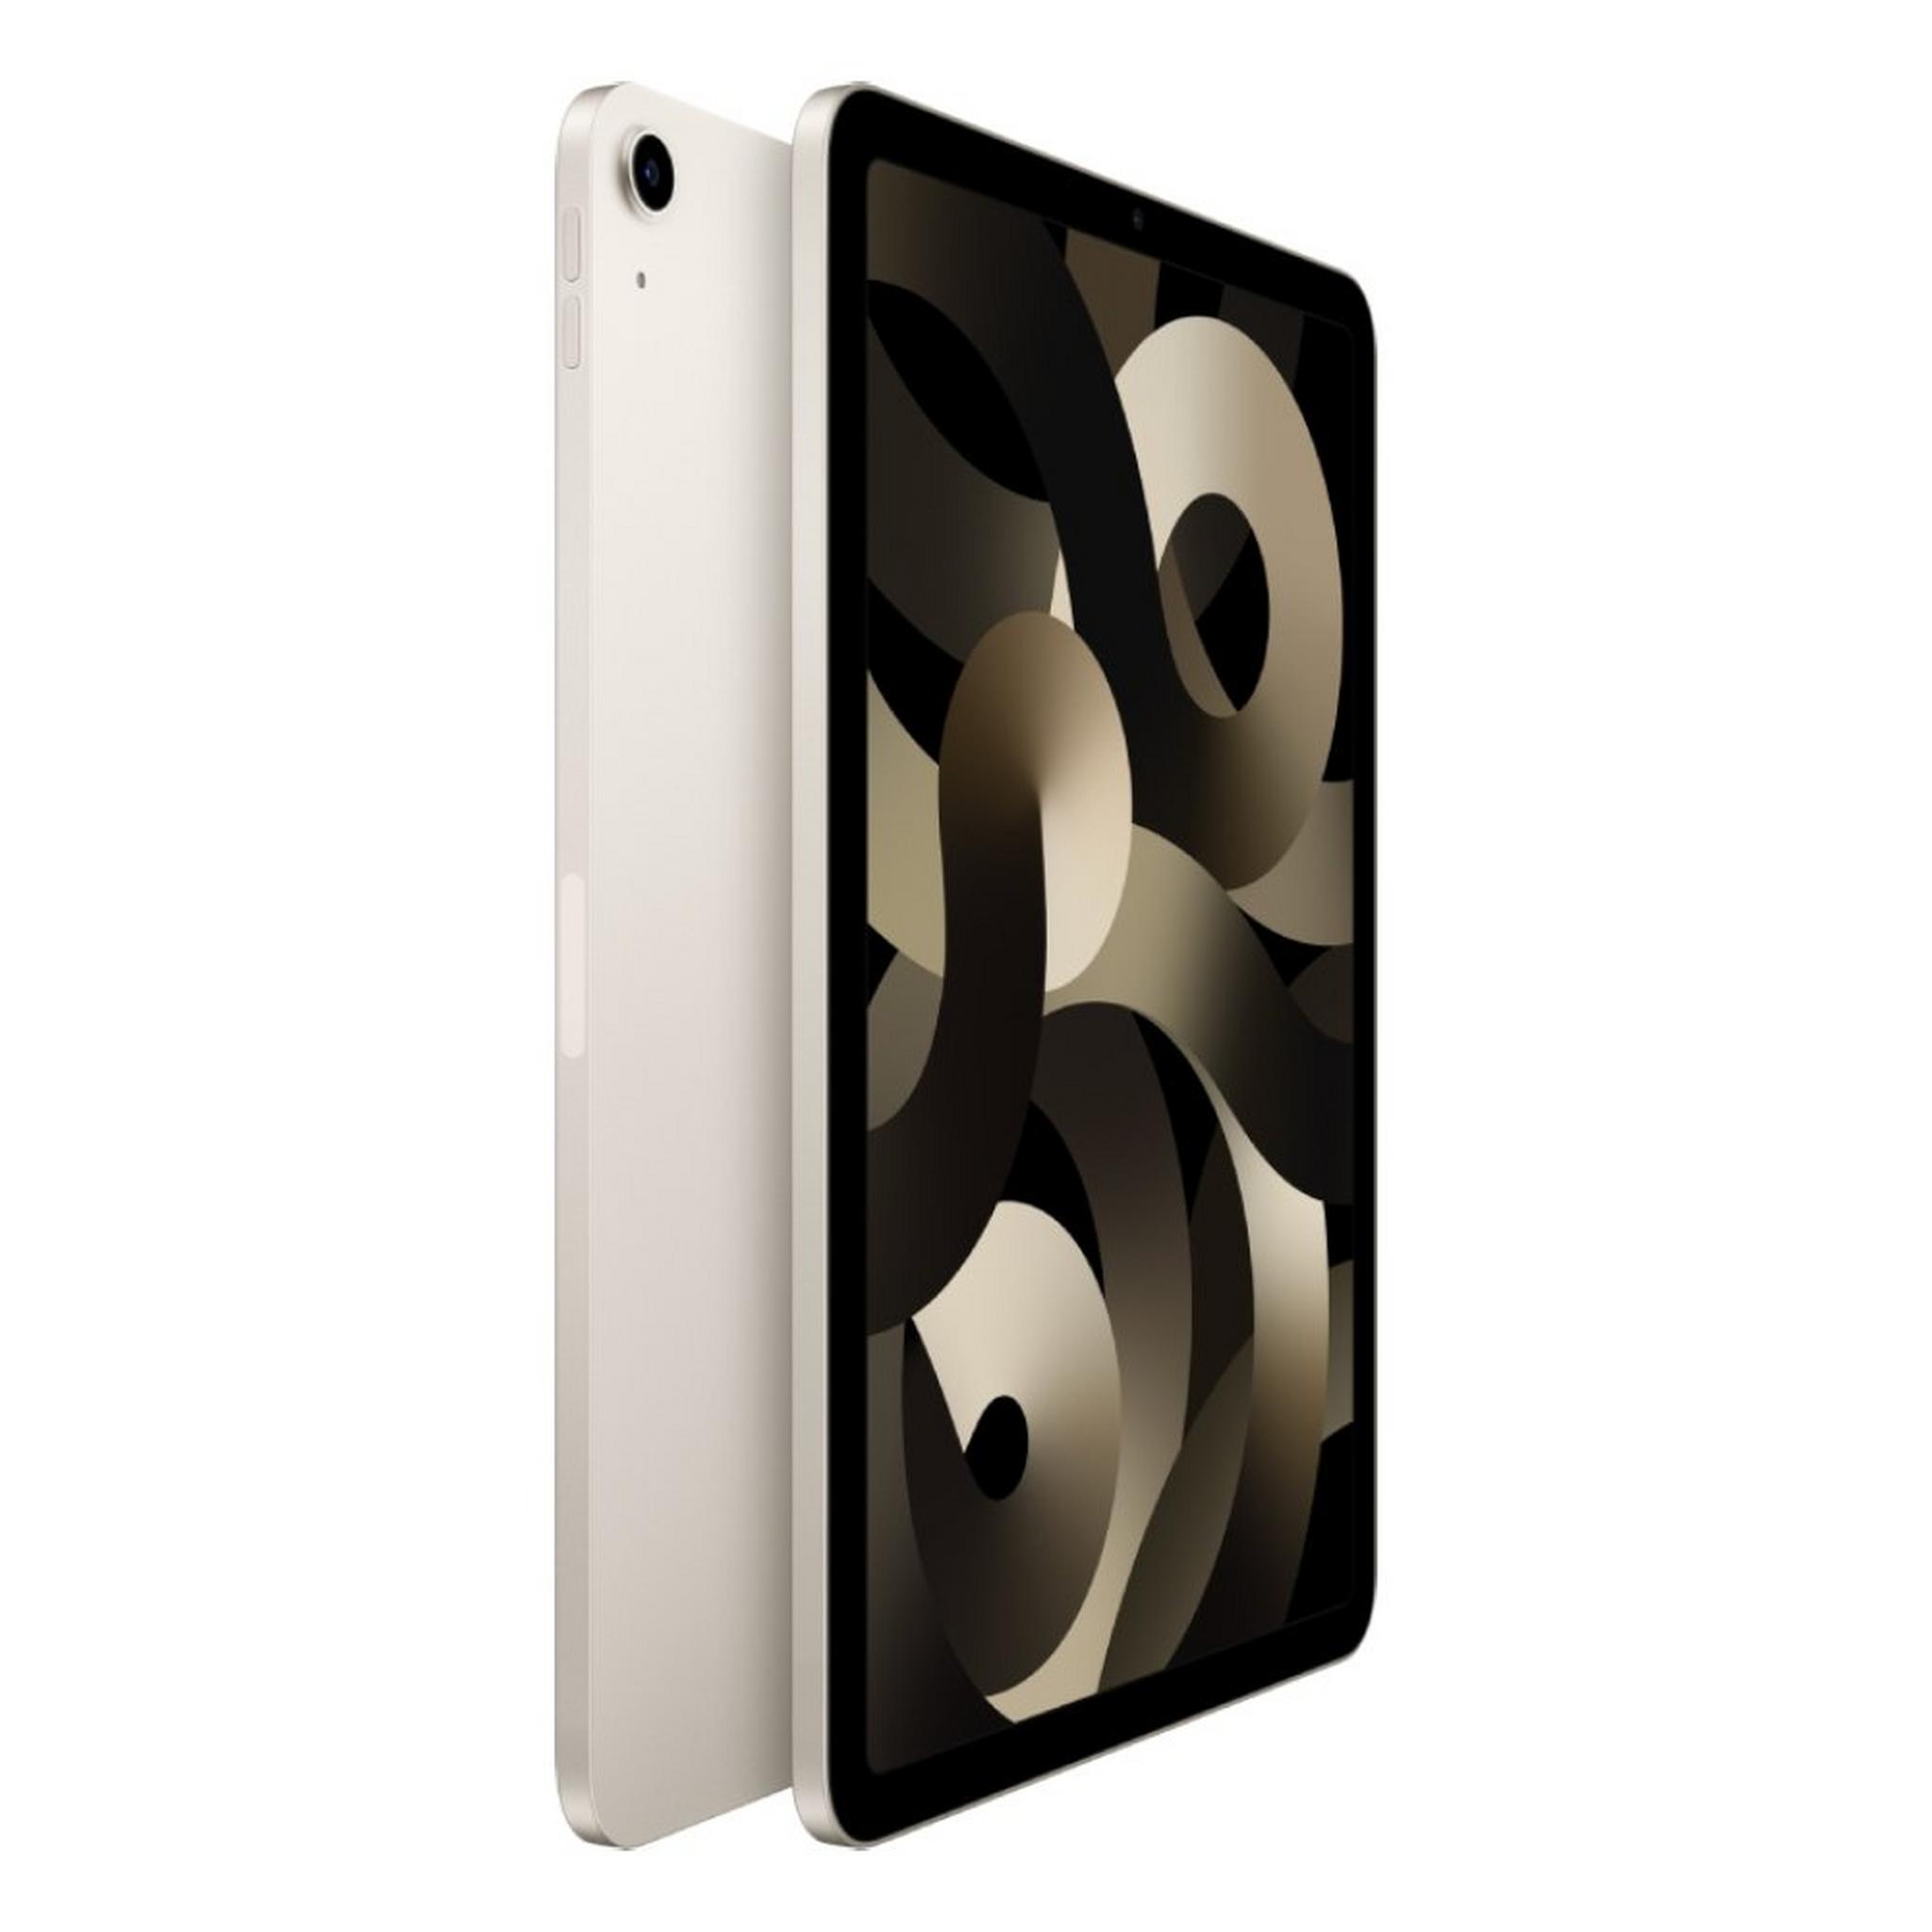 Apple iPad Air 5th Gen 64GB Wi-Fi - Starlight